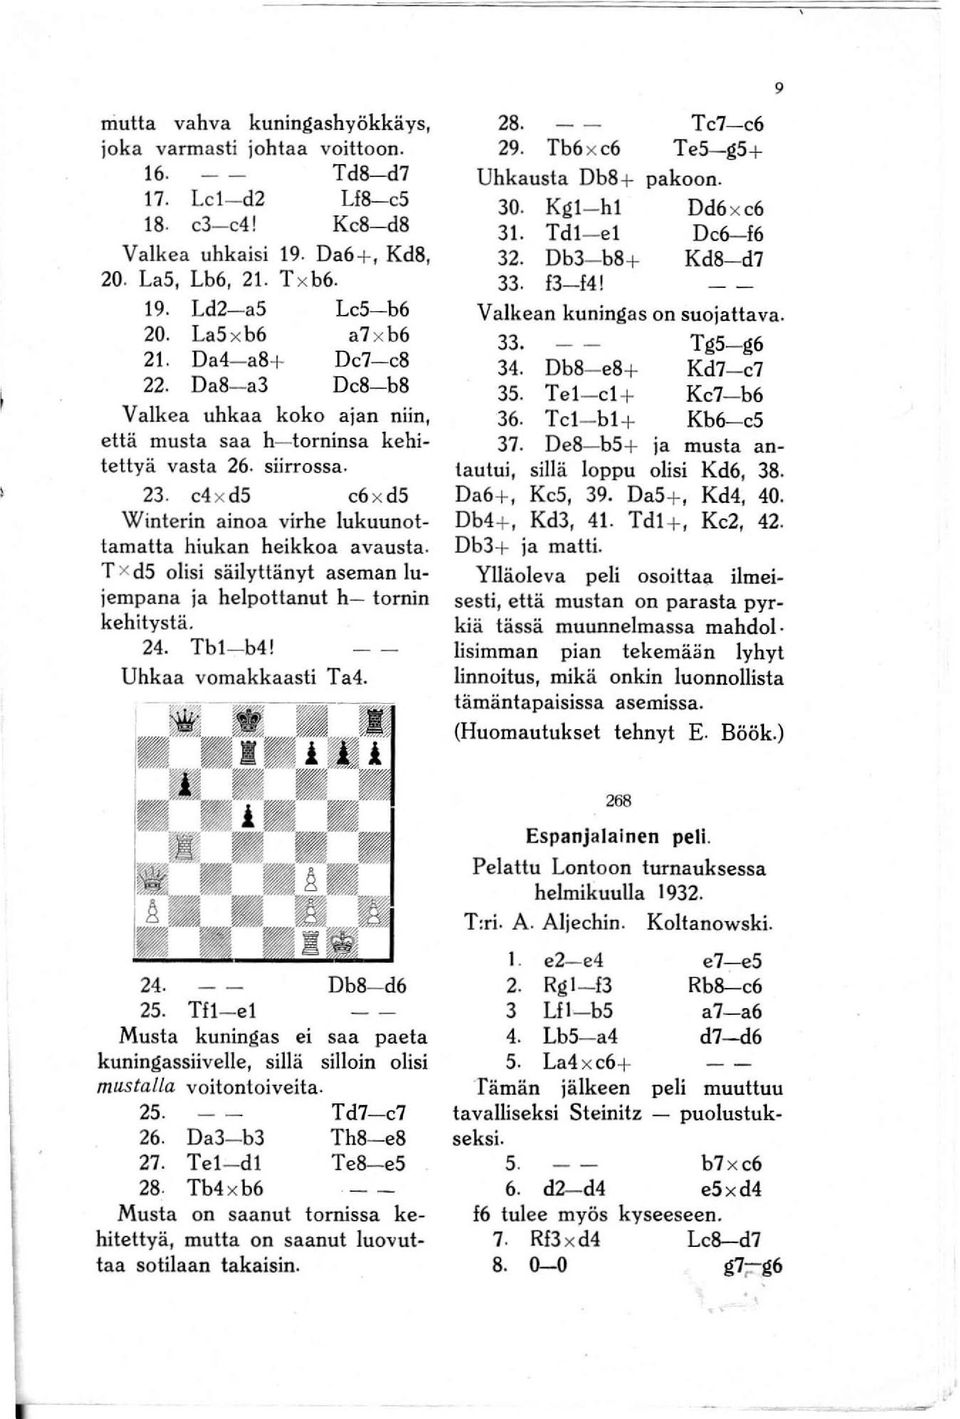 e4 x ds e6 x ds Winterin ainoa virhe lukuunottamatta hiukan heikkoa avausta. T x ds olisi säilyttänyt aseman lujempana ja helpottanut h- tornin kehitystä. 24. Tbl- b4! Uhkaa vomakkaasti Ta4. 28. 29.